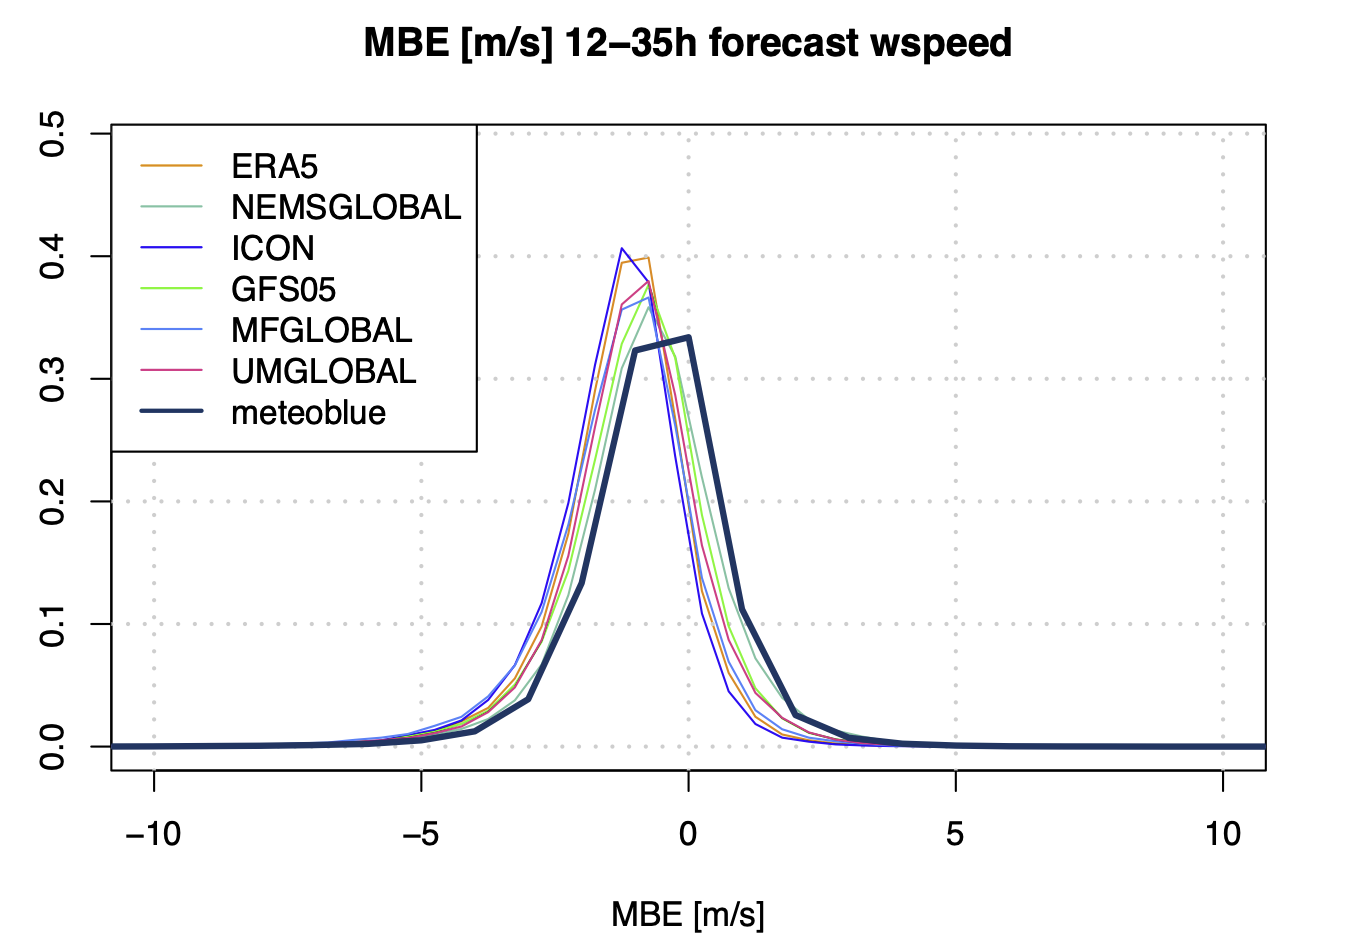 Dichteplot des MBE verschiedener Vorhersagemodelle und des Reanalysemodells ERA5 sowie der meteoblue Vorhersage und stündlichen Messungen von mehr als 450 Stationen weltweit des Jahres 2021.